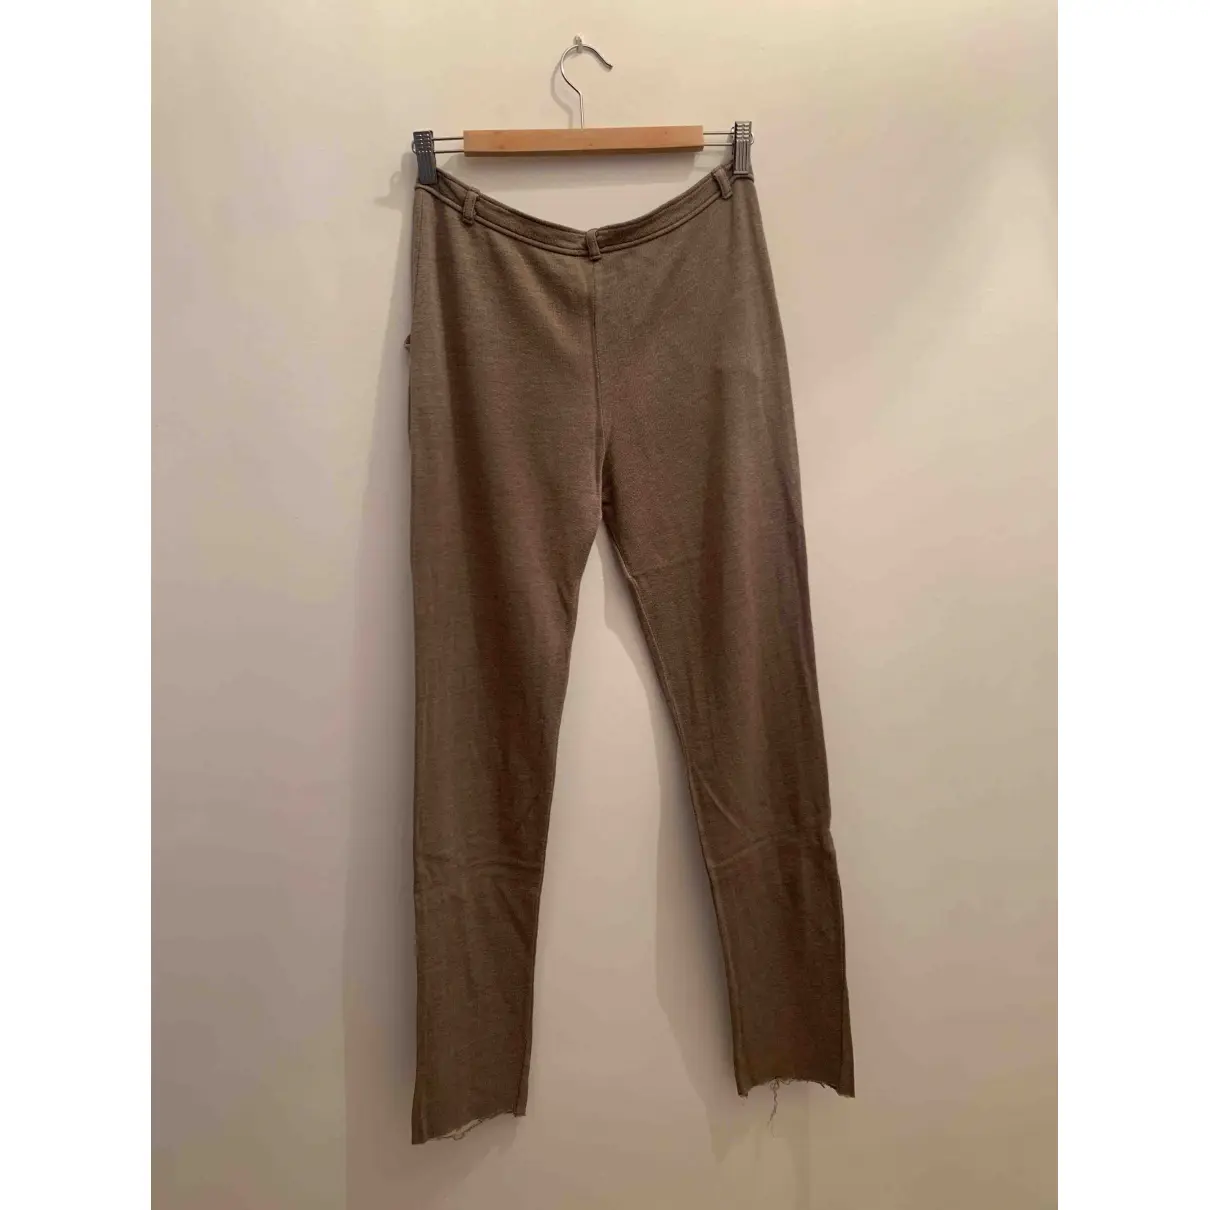 Buy American Vintage Carot pants online